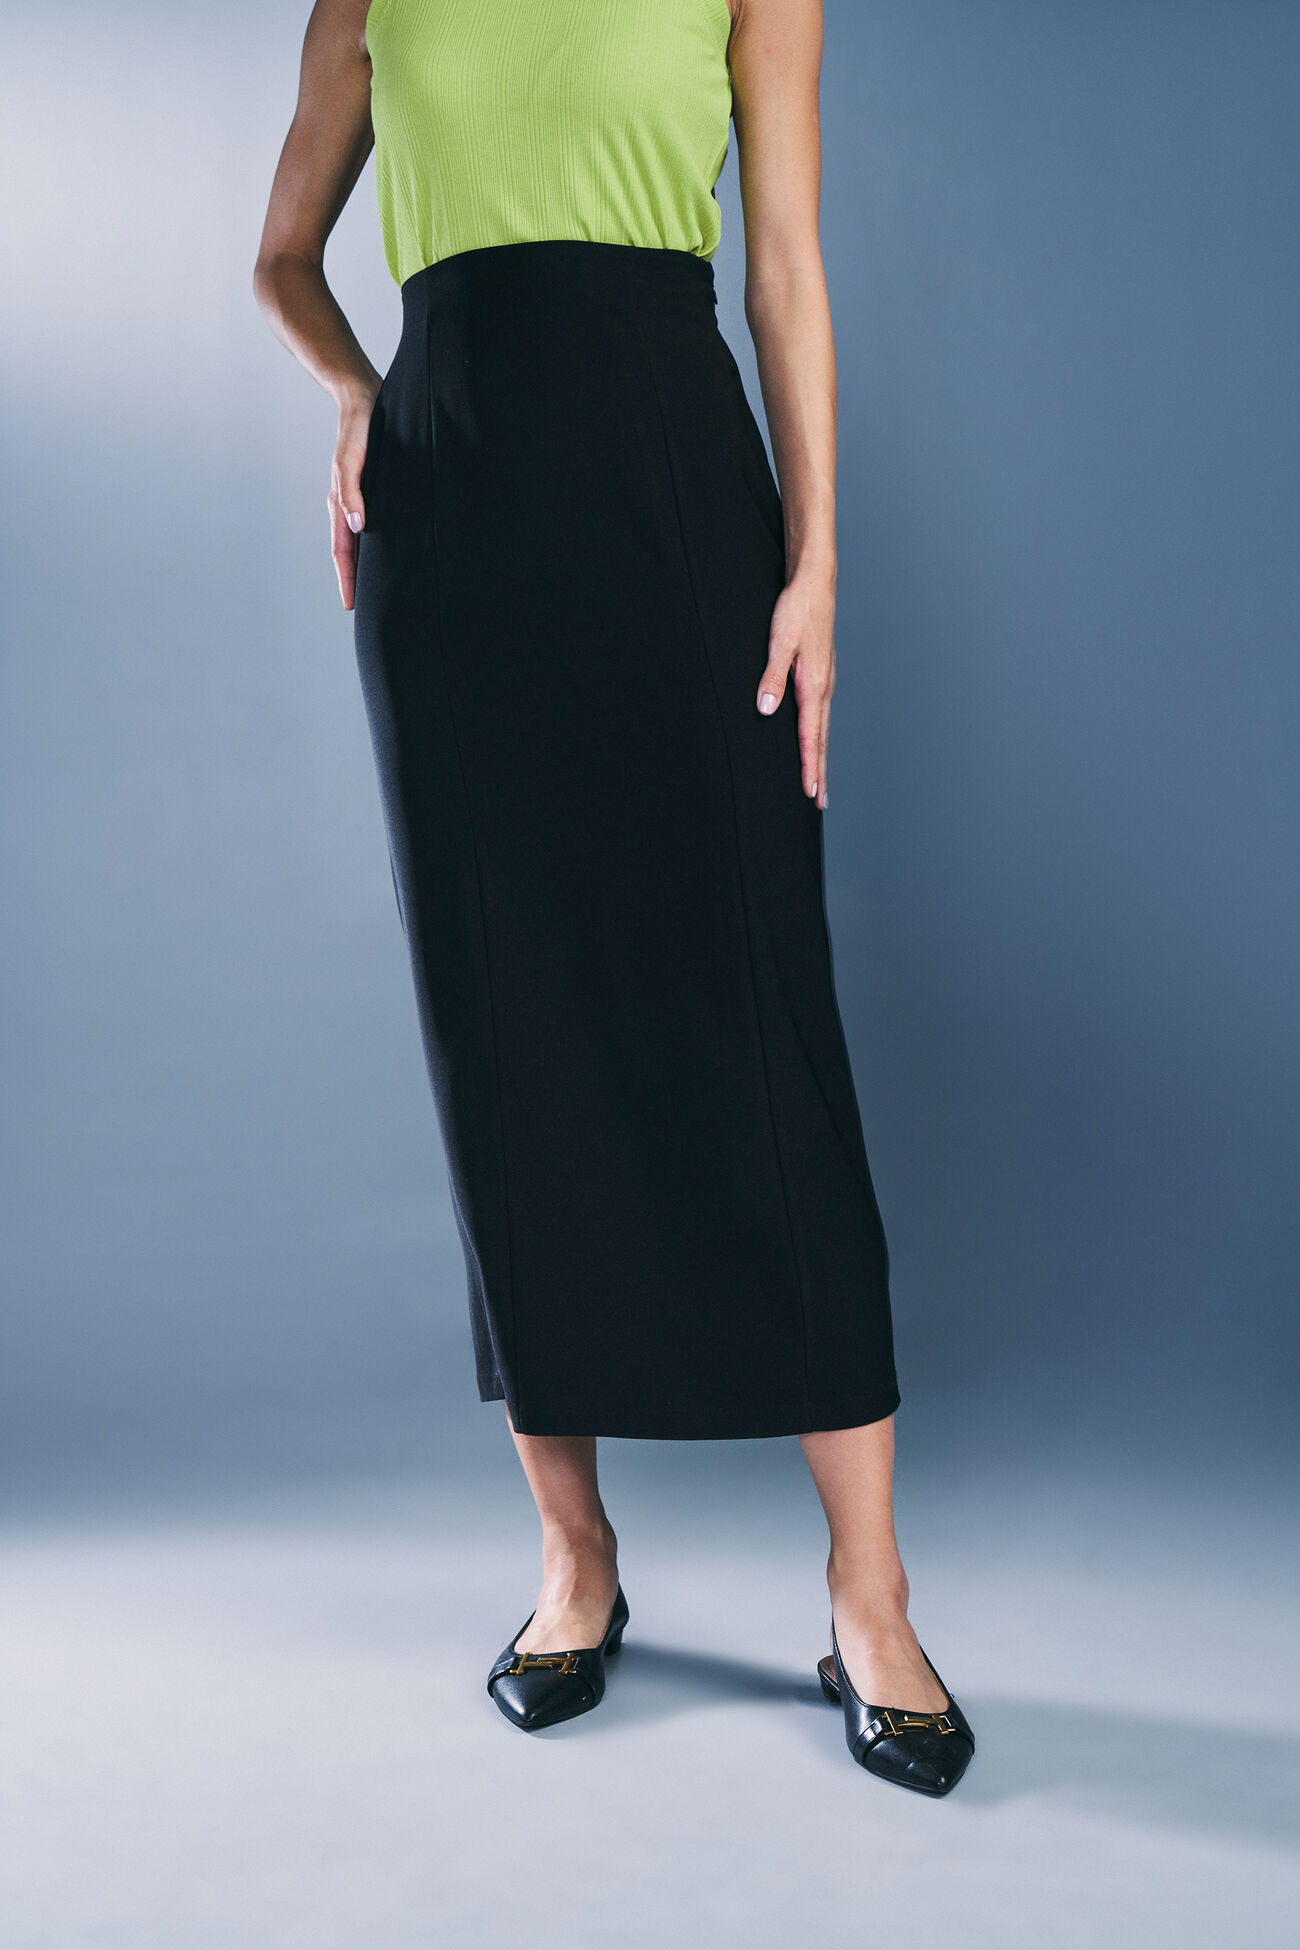 Noir Allure Skirt, Black, image 1